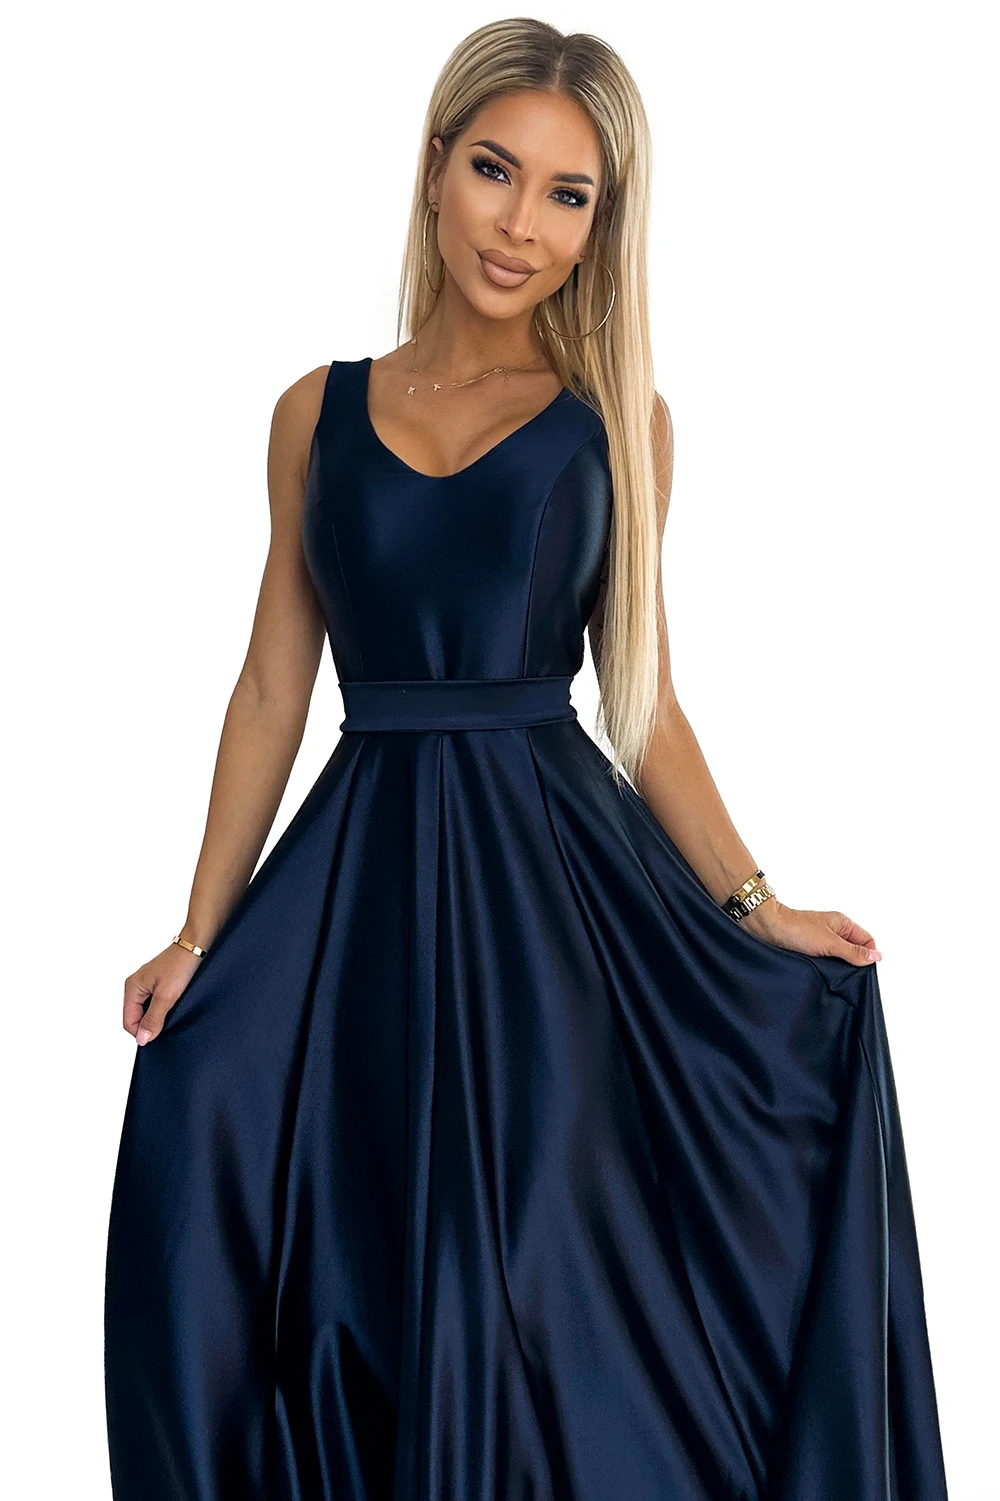 508-1 CINDY długa satynowa suknia z dekoltem i kokardą - GRANATOWA